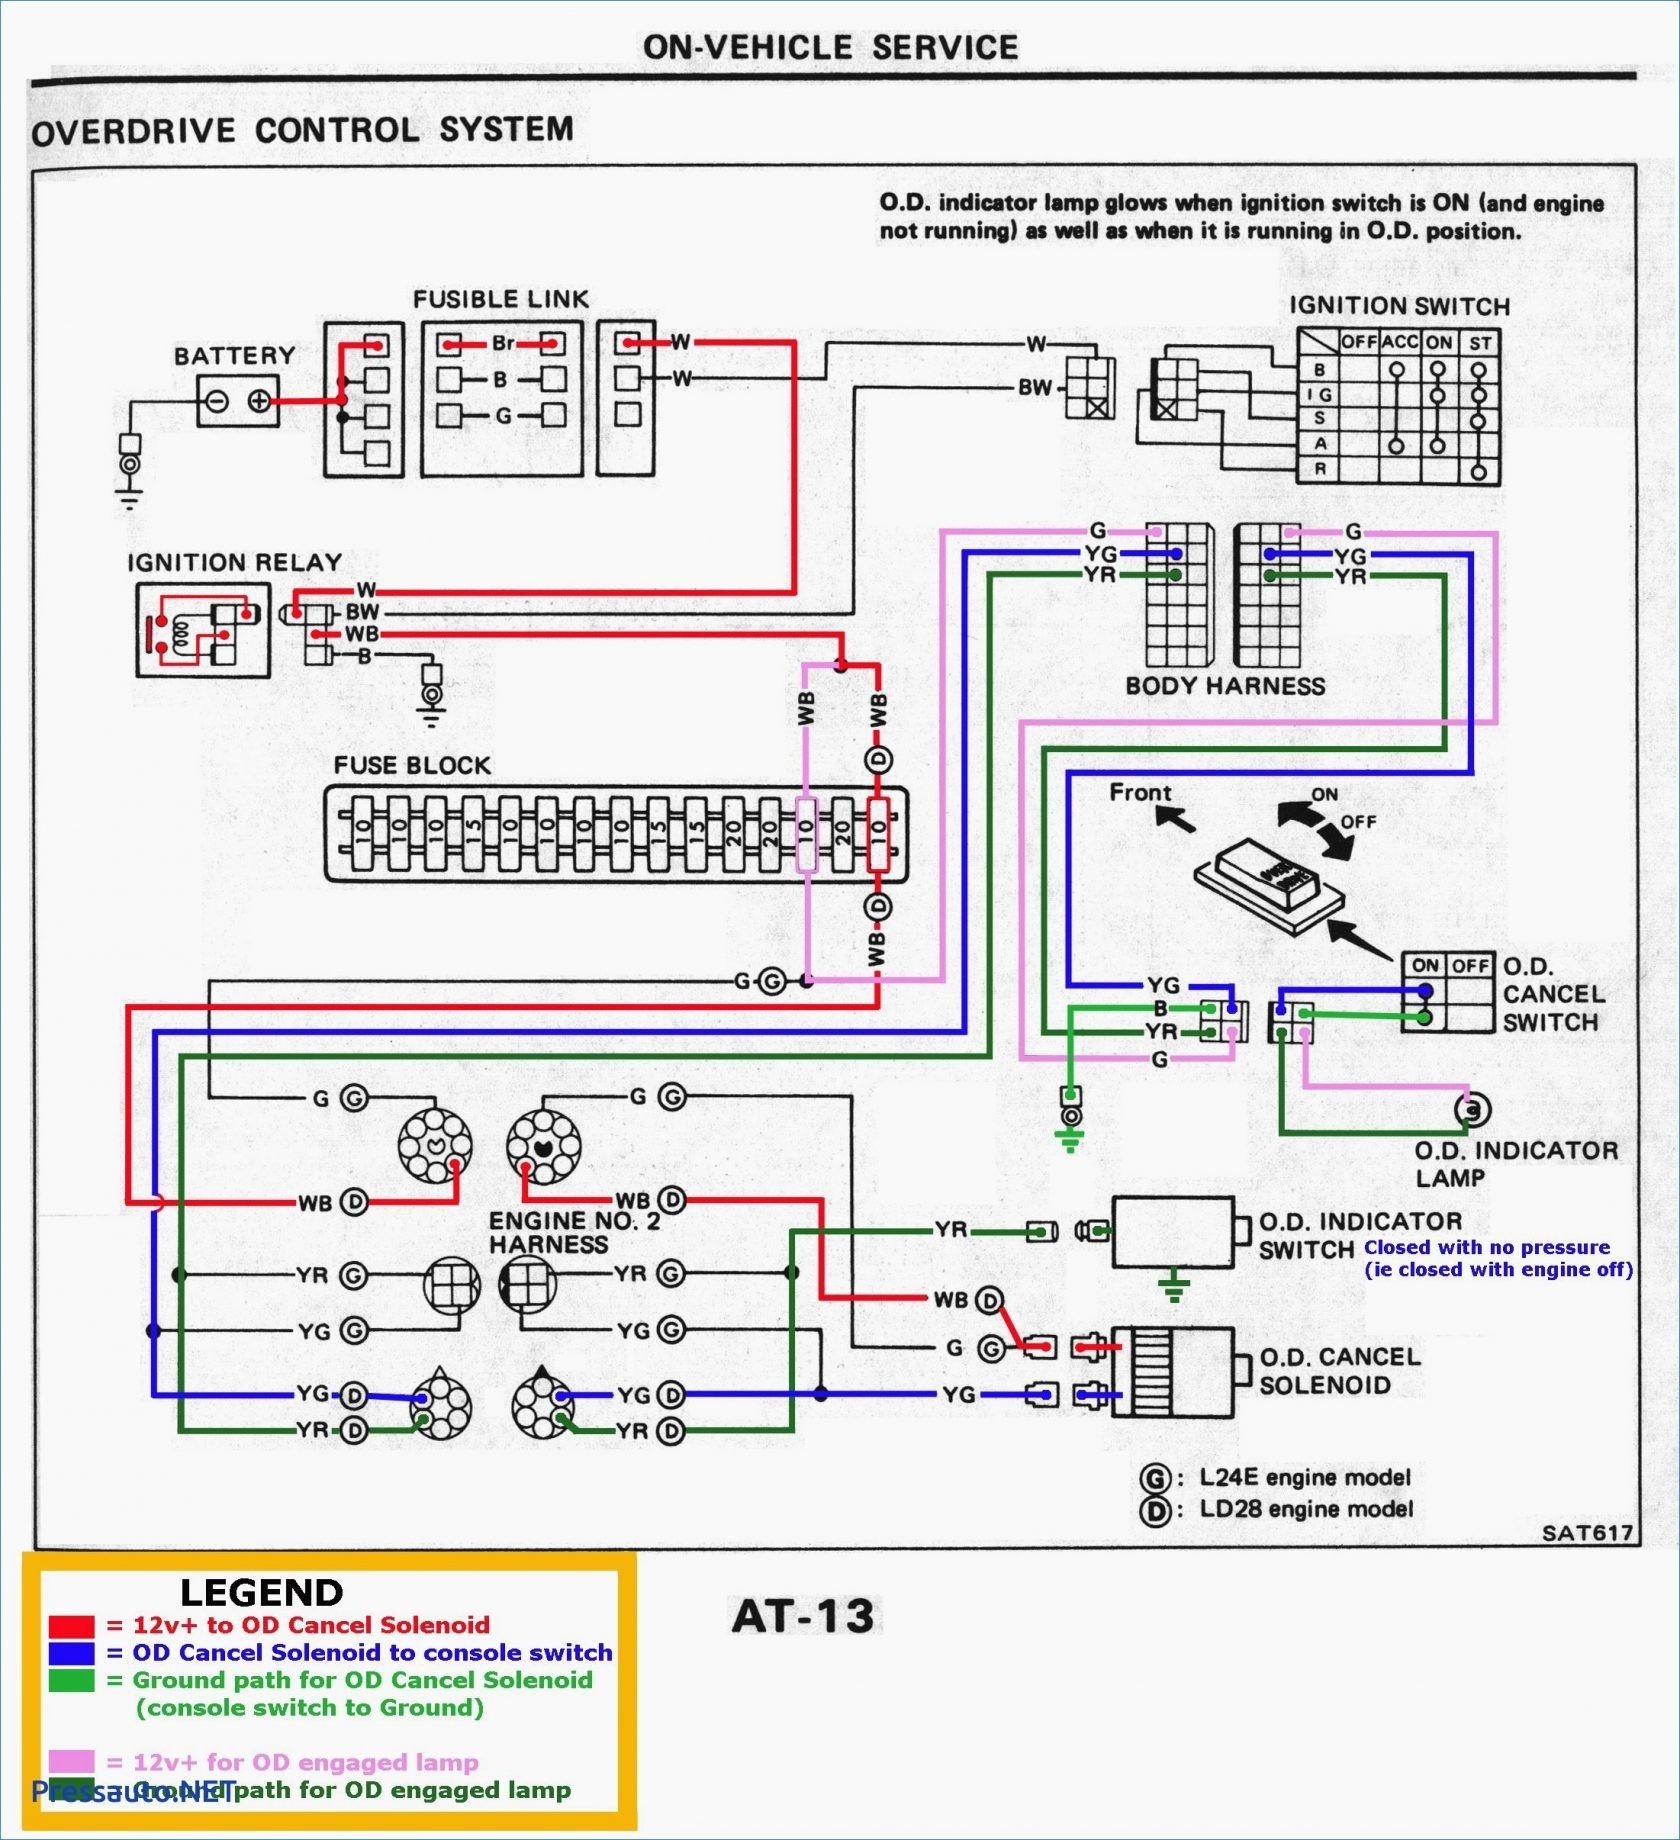 1991 Ford Explorer Wiring Diagram from detoxicrecenze.com